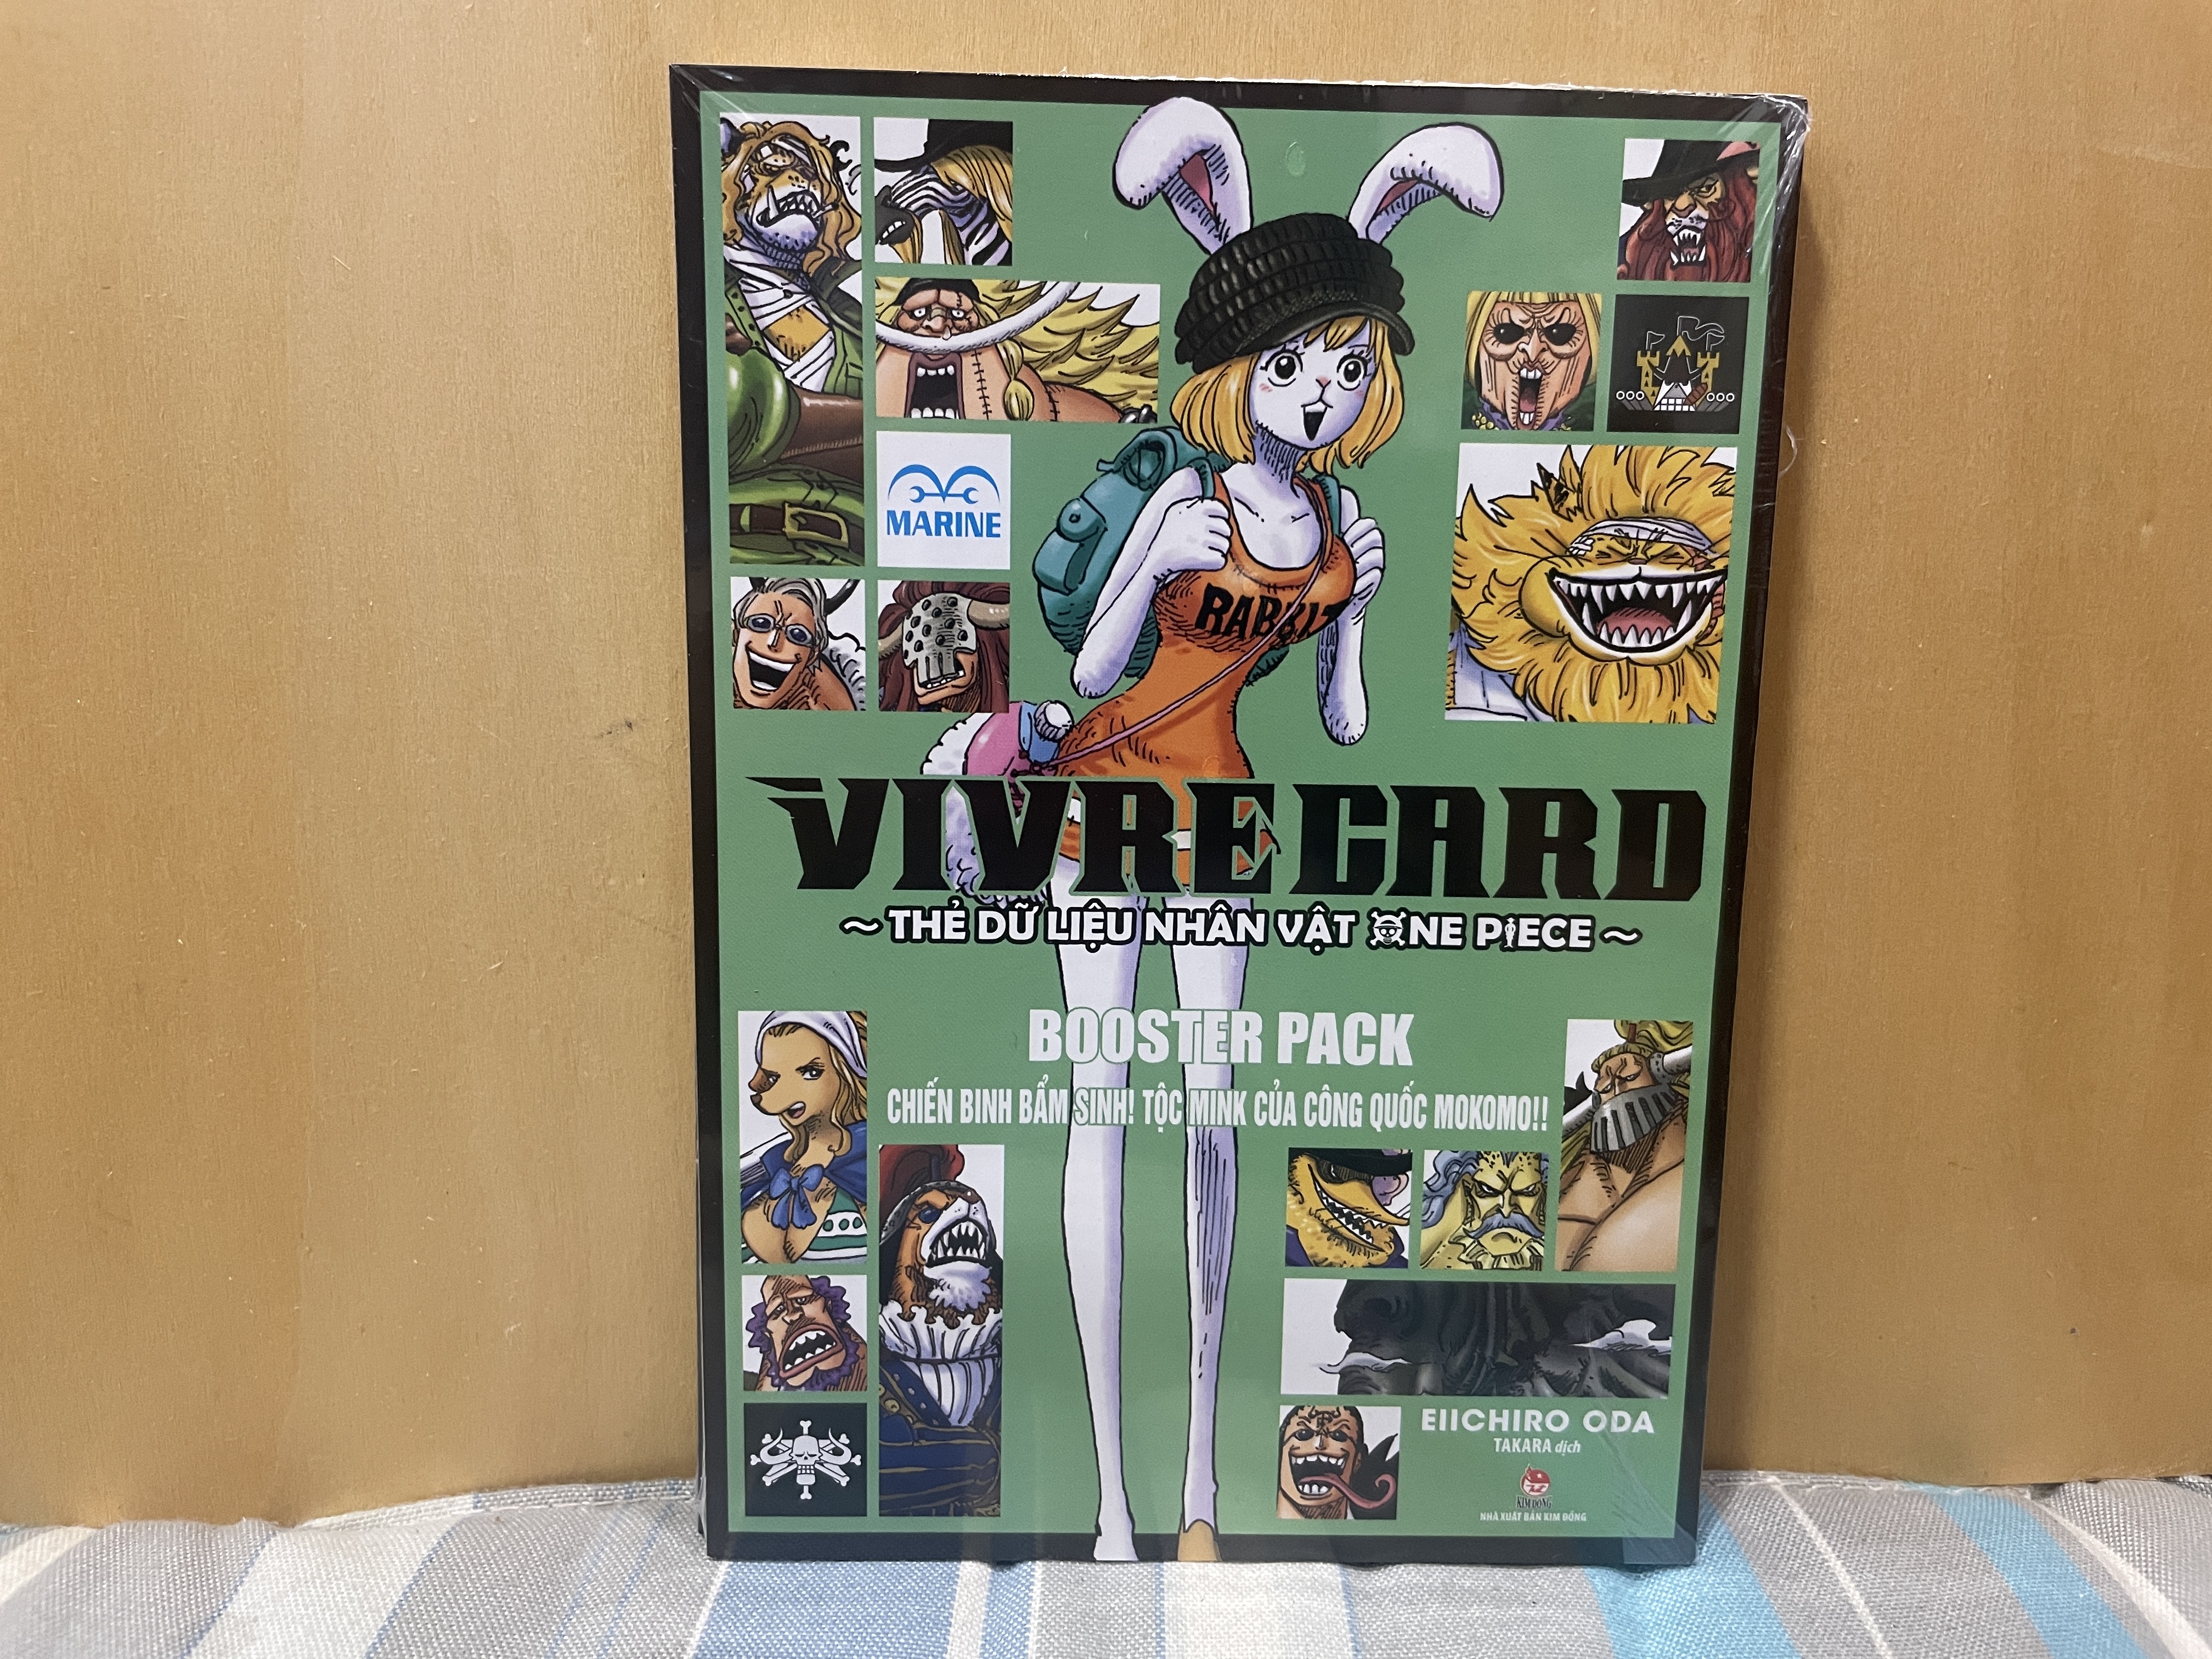 One Piece Vivre Card - Thẻ dữ liệu nhân vật One Piece Booster Pack - Chiến binh bẩm sinh ! Tộc Mink của công quốc Mokomo